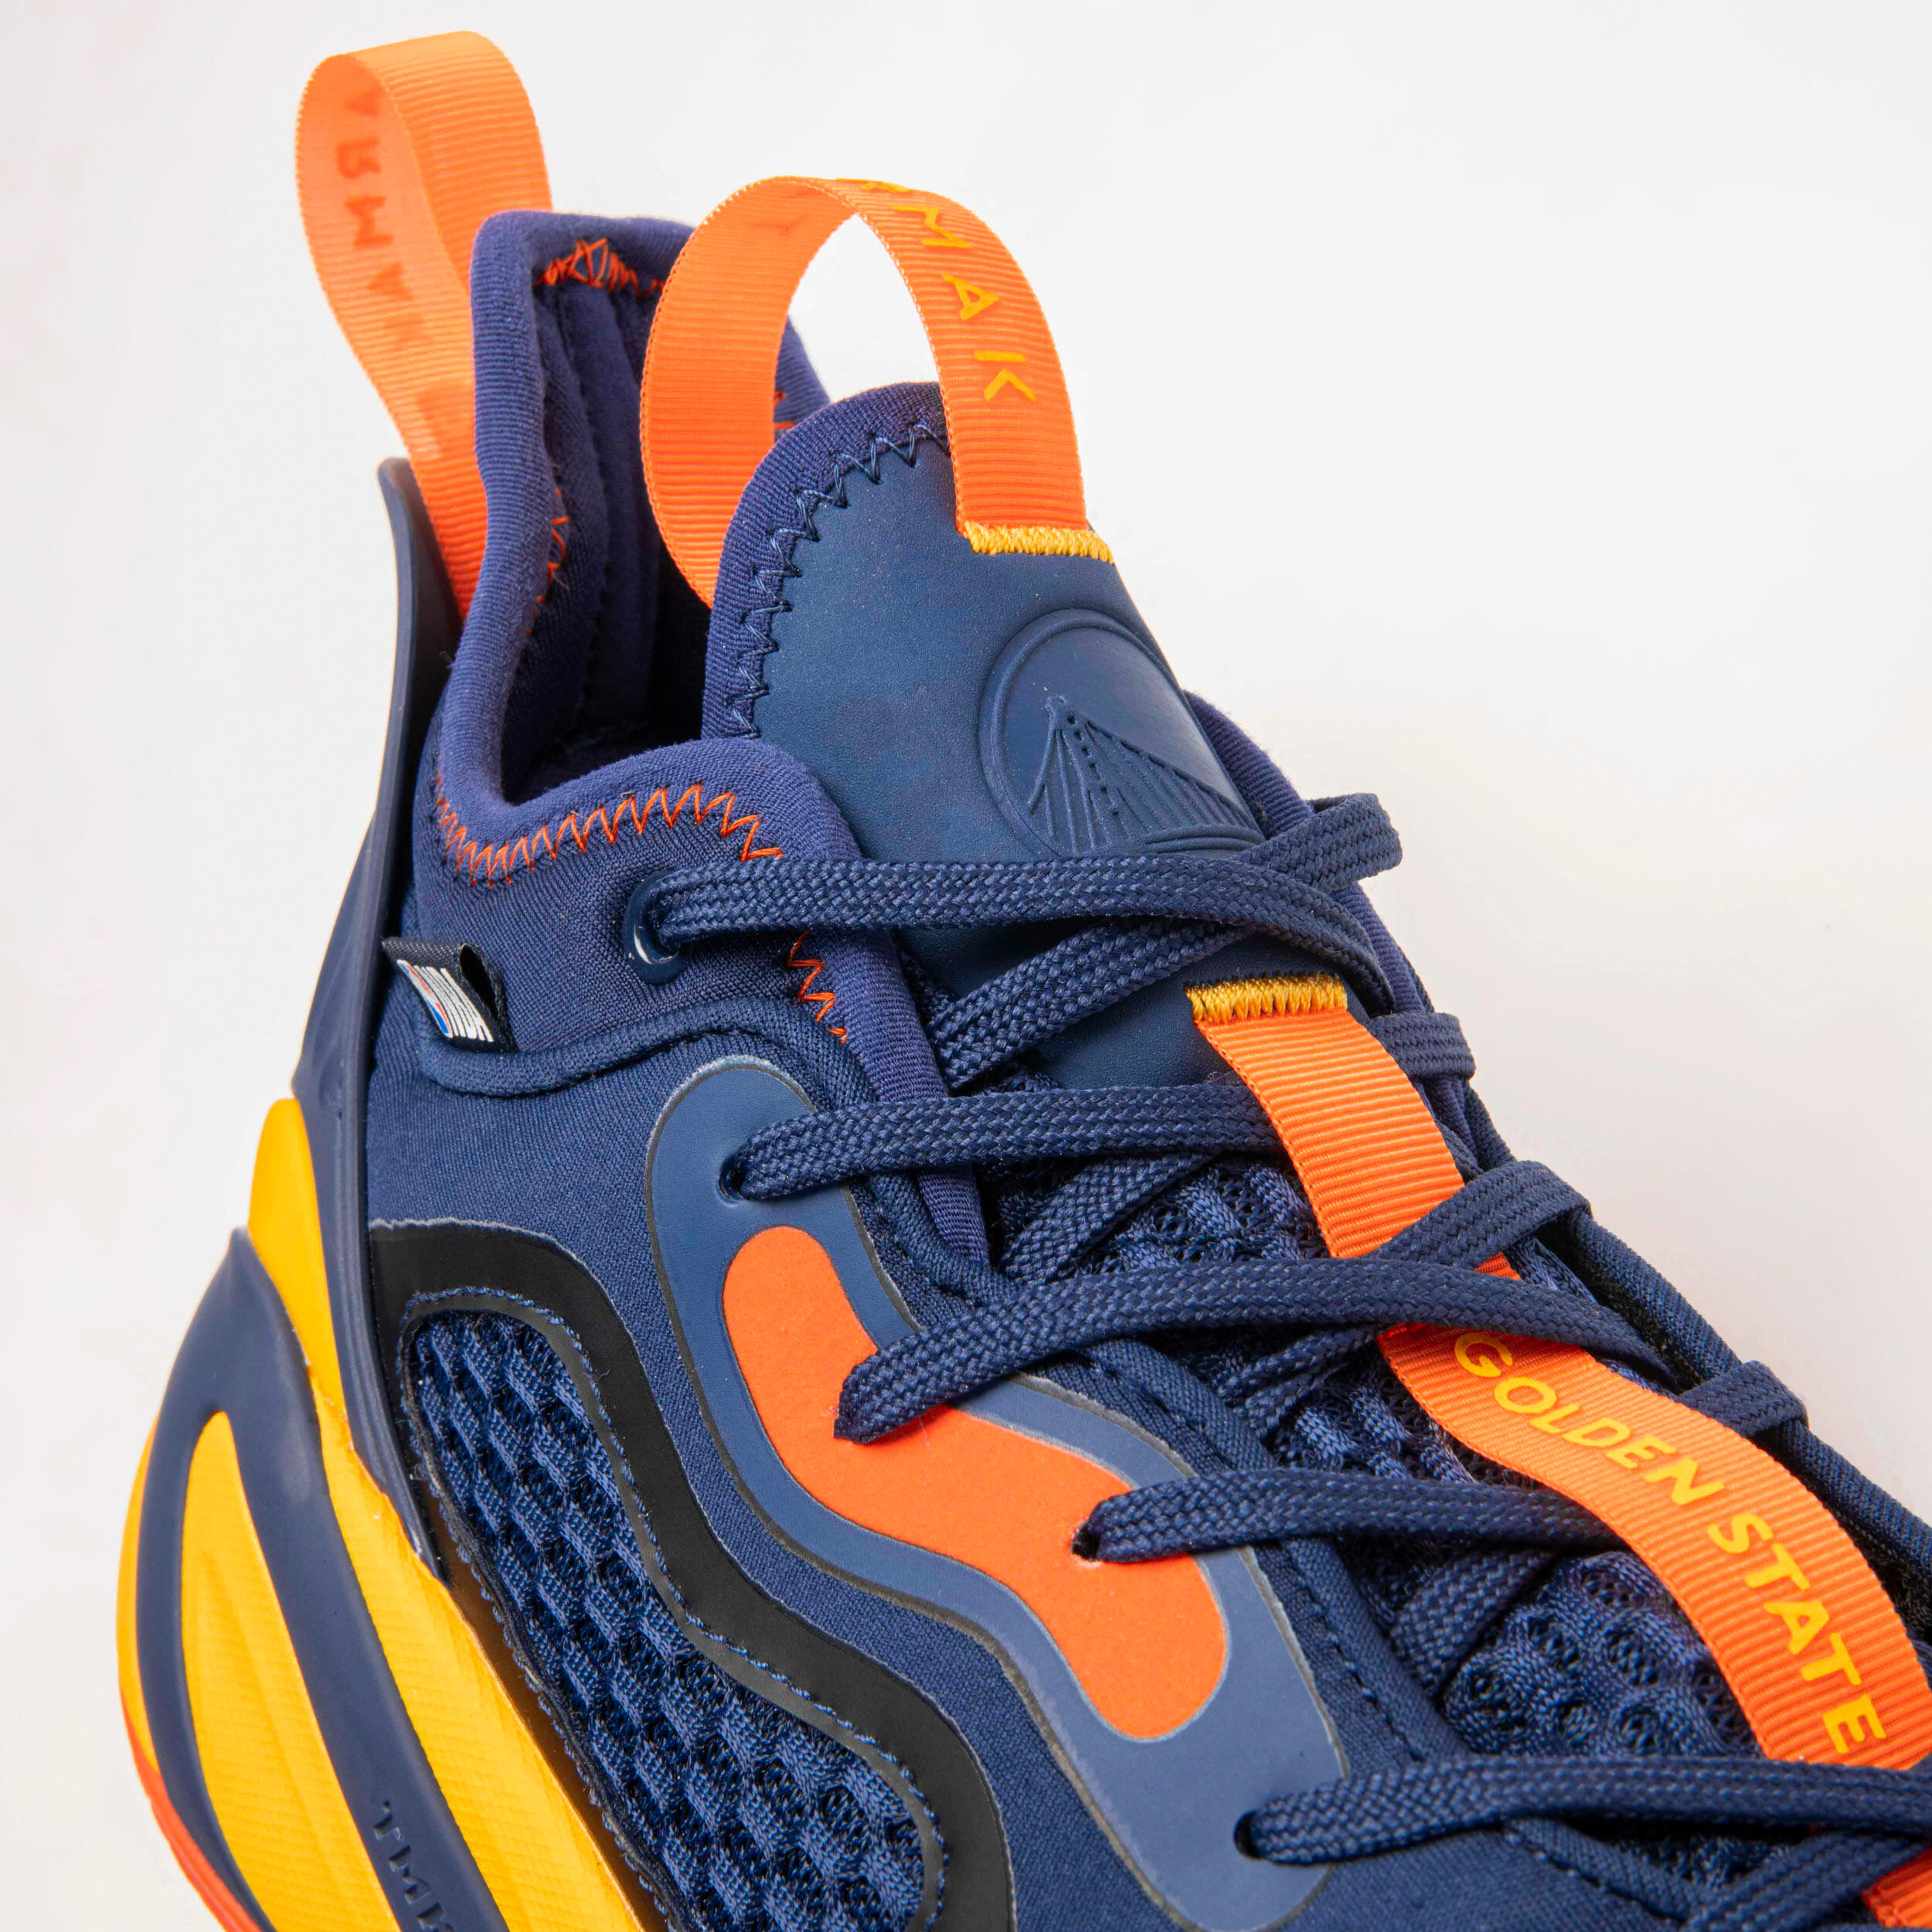 Men's/Women's Basketball Shoes SE900 - Blue/NBA Golden State Warriors 4/11